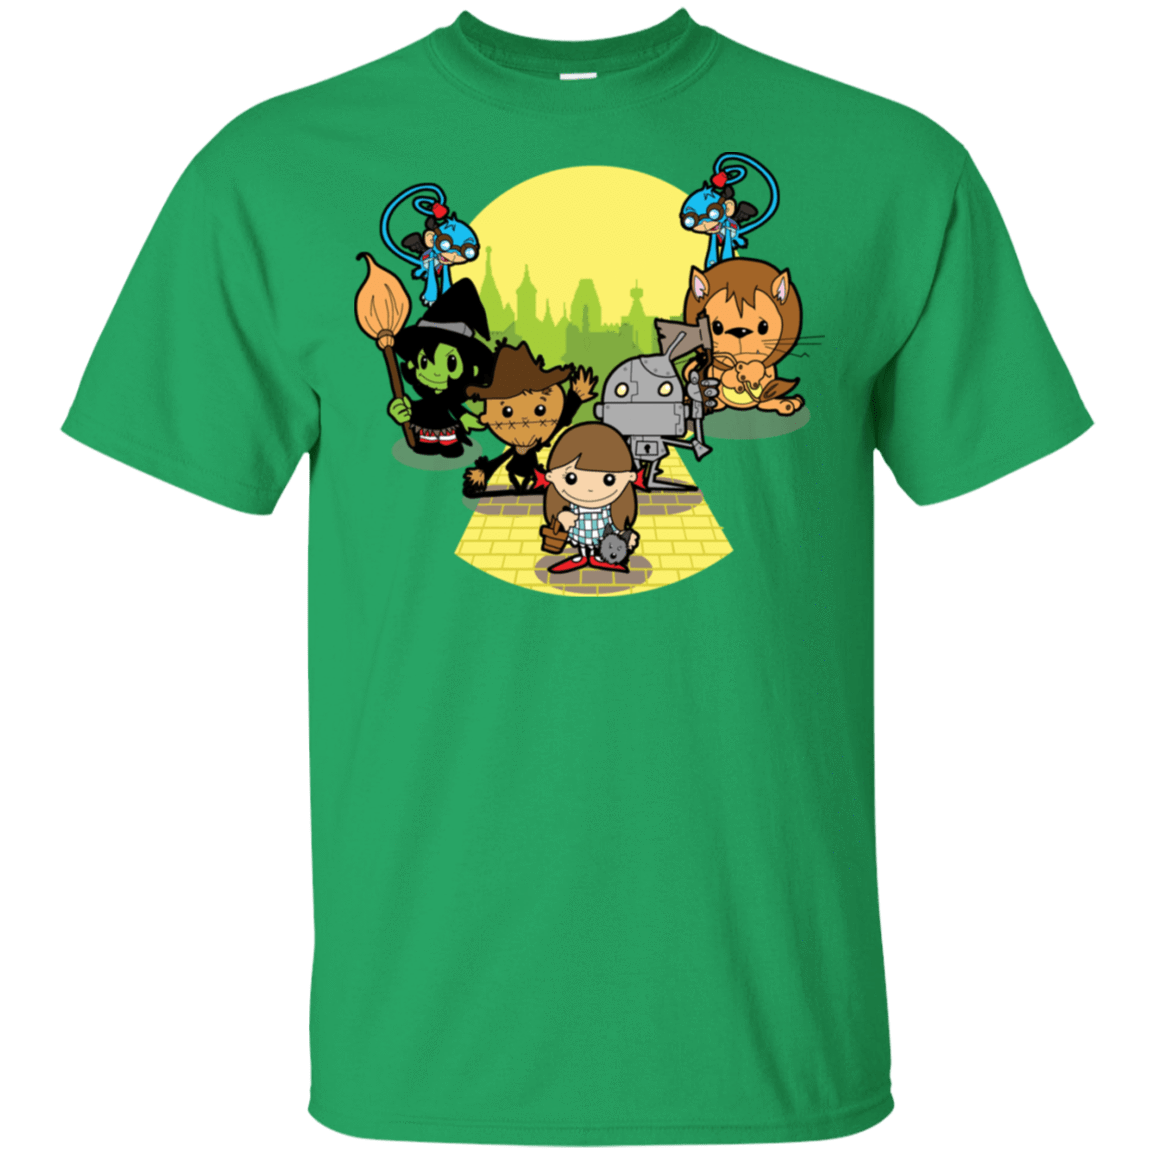 T-Shirts Irish Green / S Oz T-Shirt